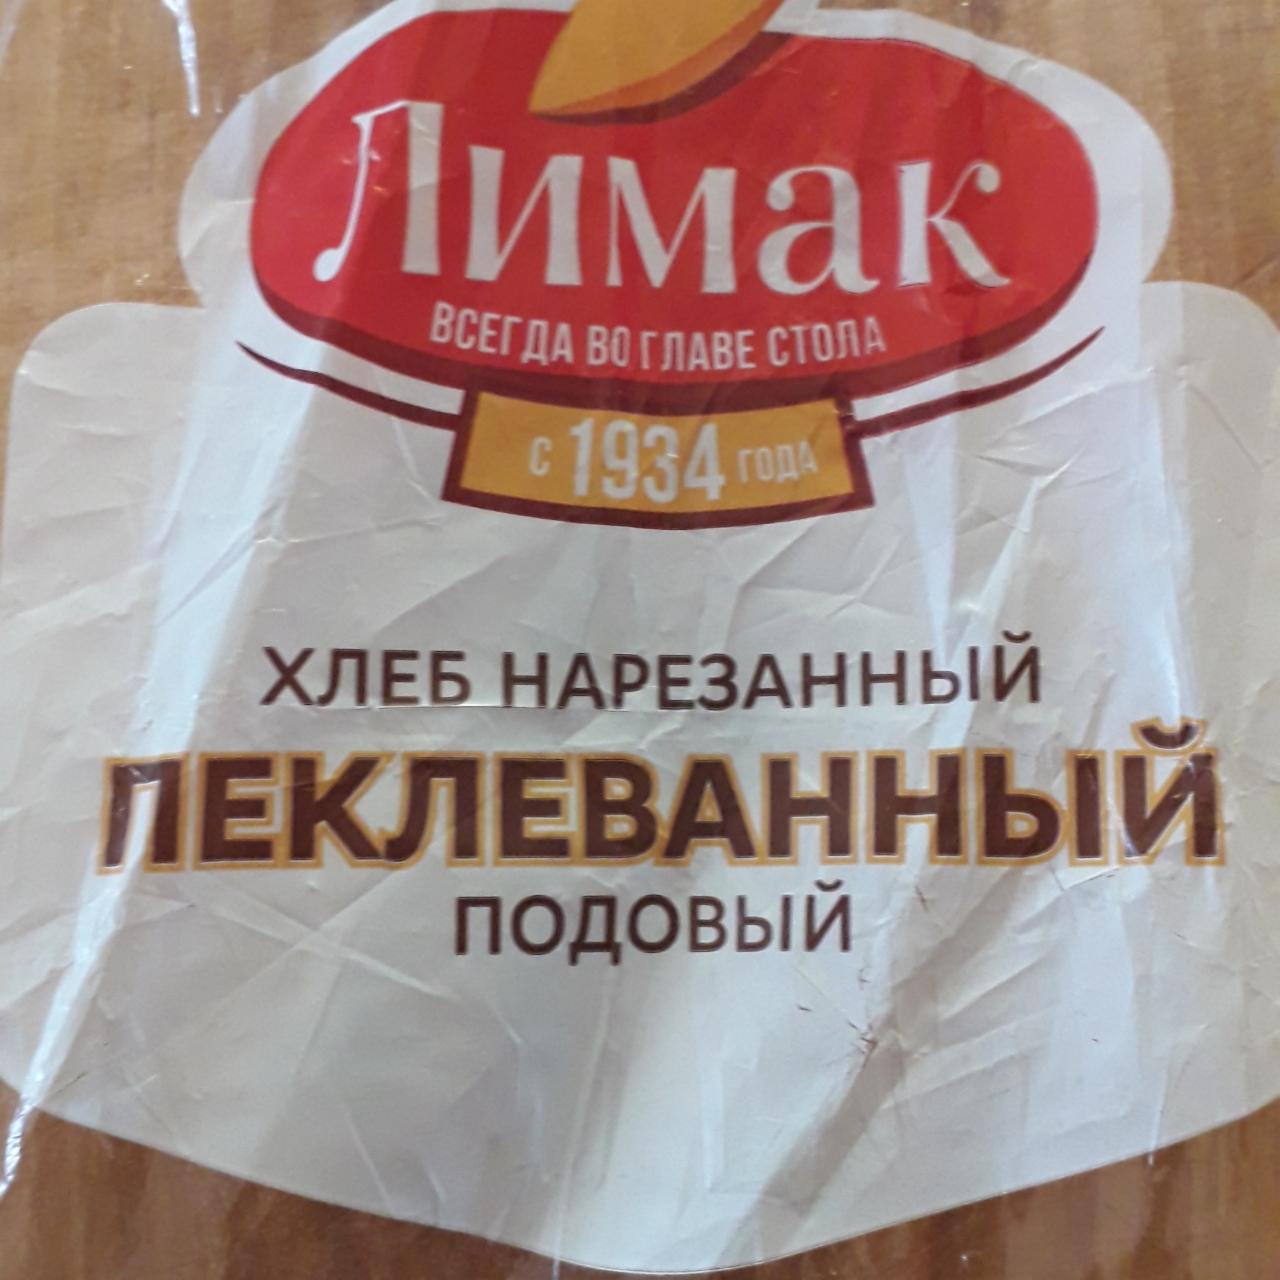 Фото - Хлеб нарезаный пеклеванный подовый Лимак